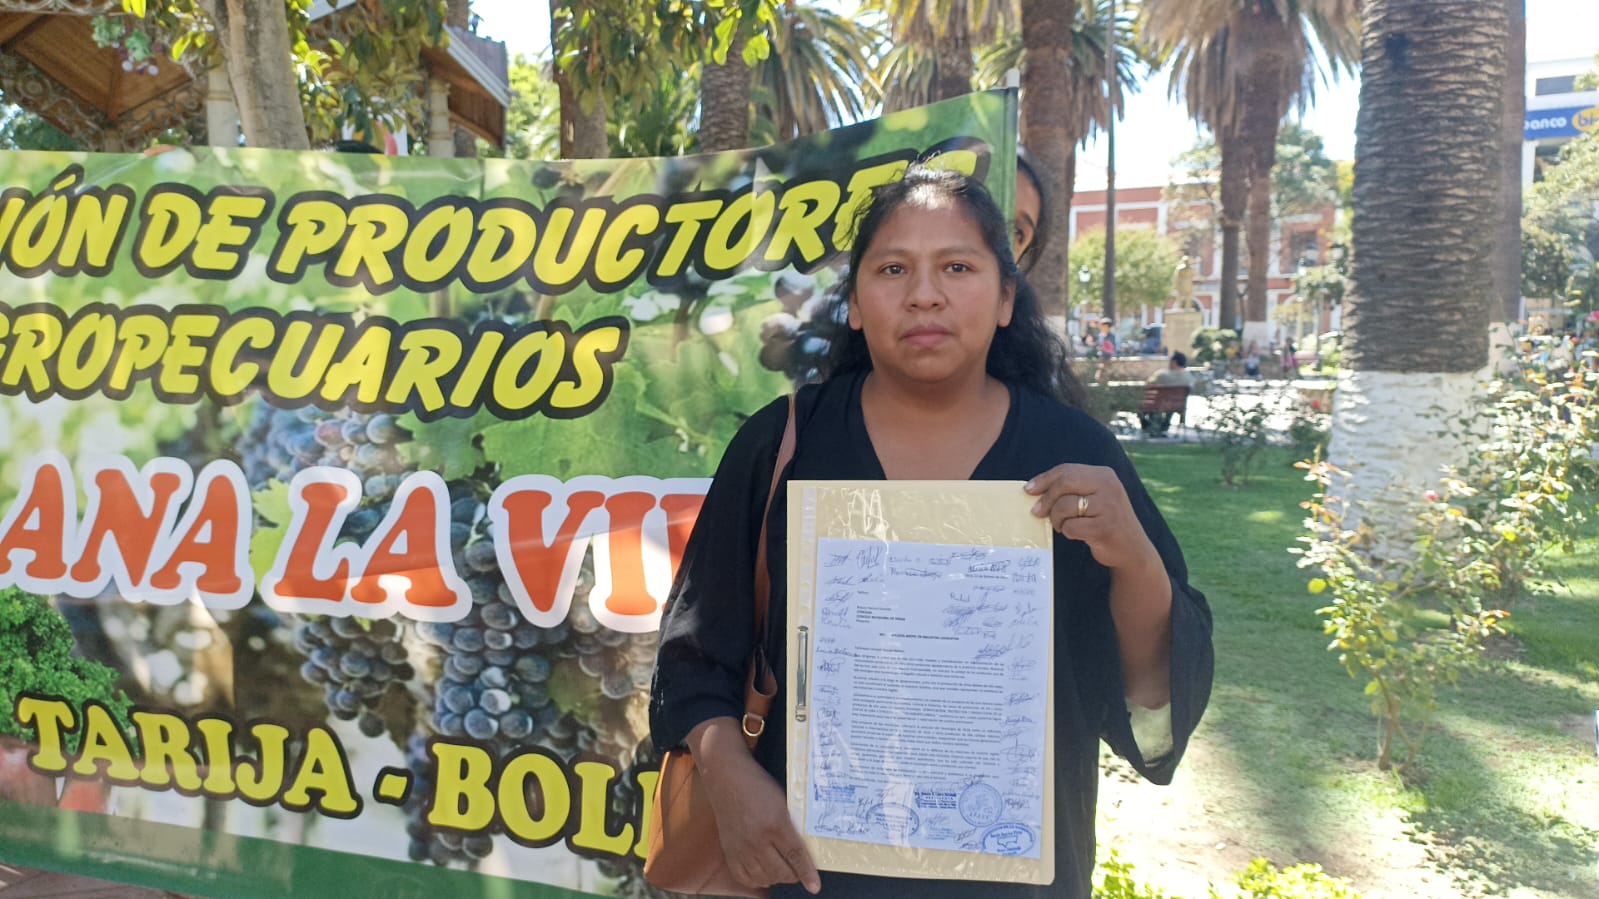 Productores agrícolas de Santa Ana la Vieja solicitan zonificación de su zona de producción de uva